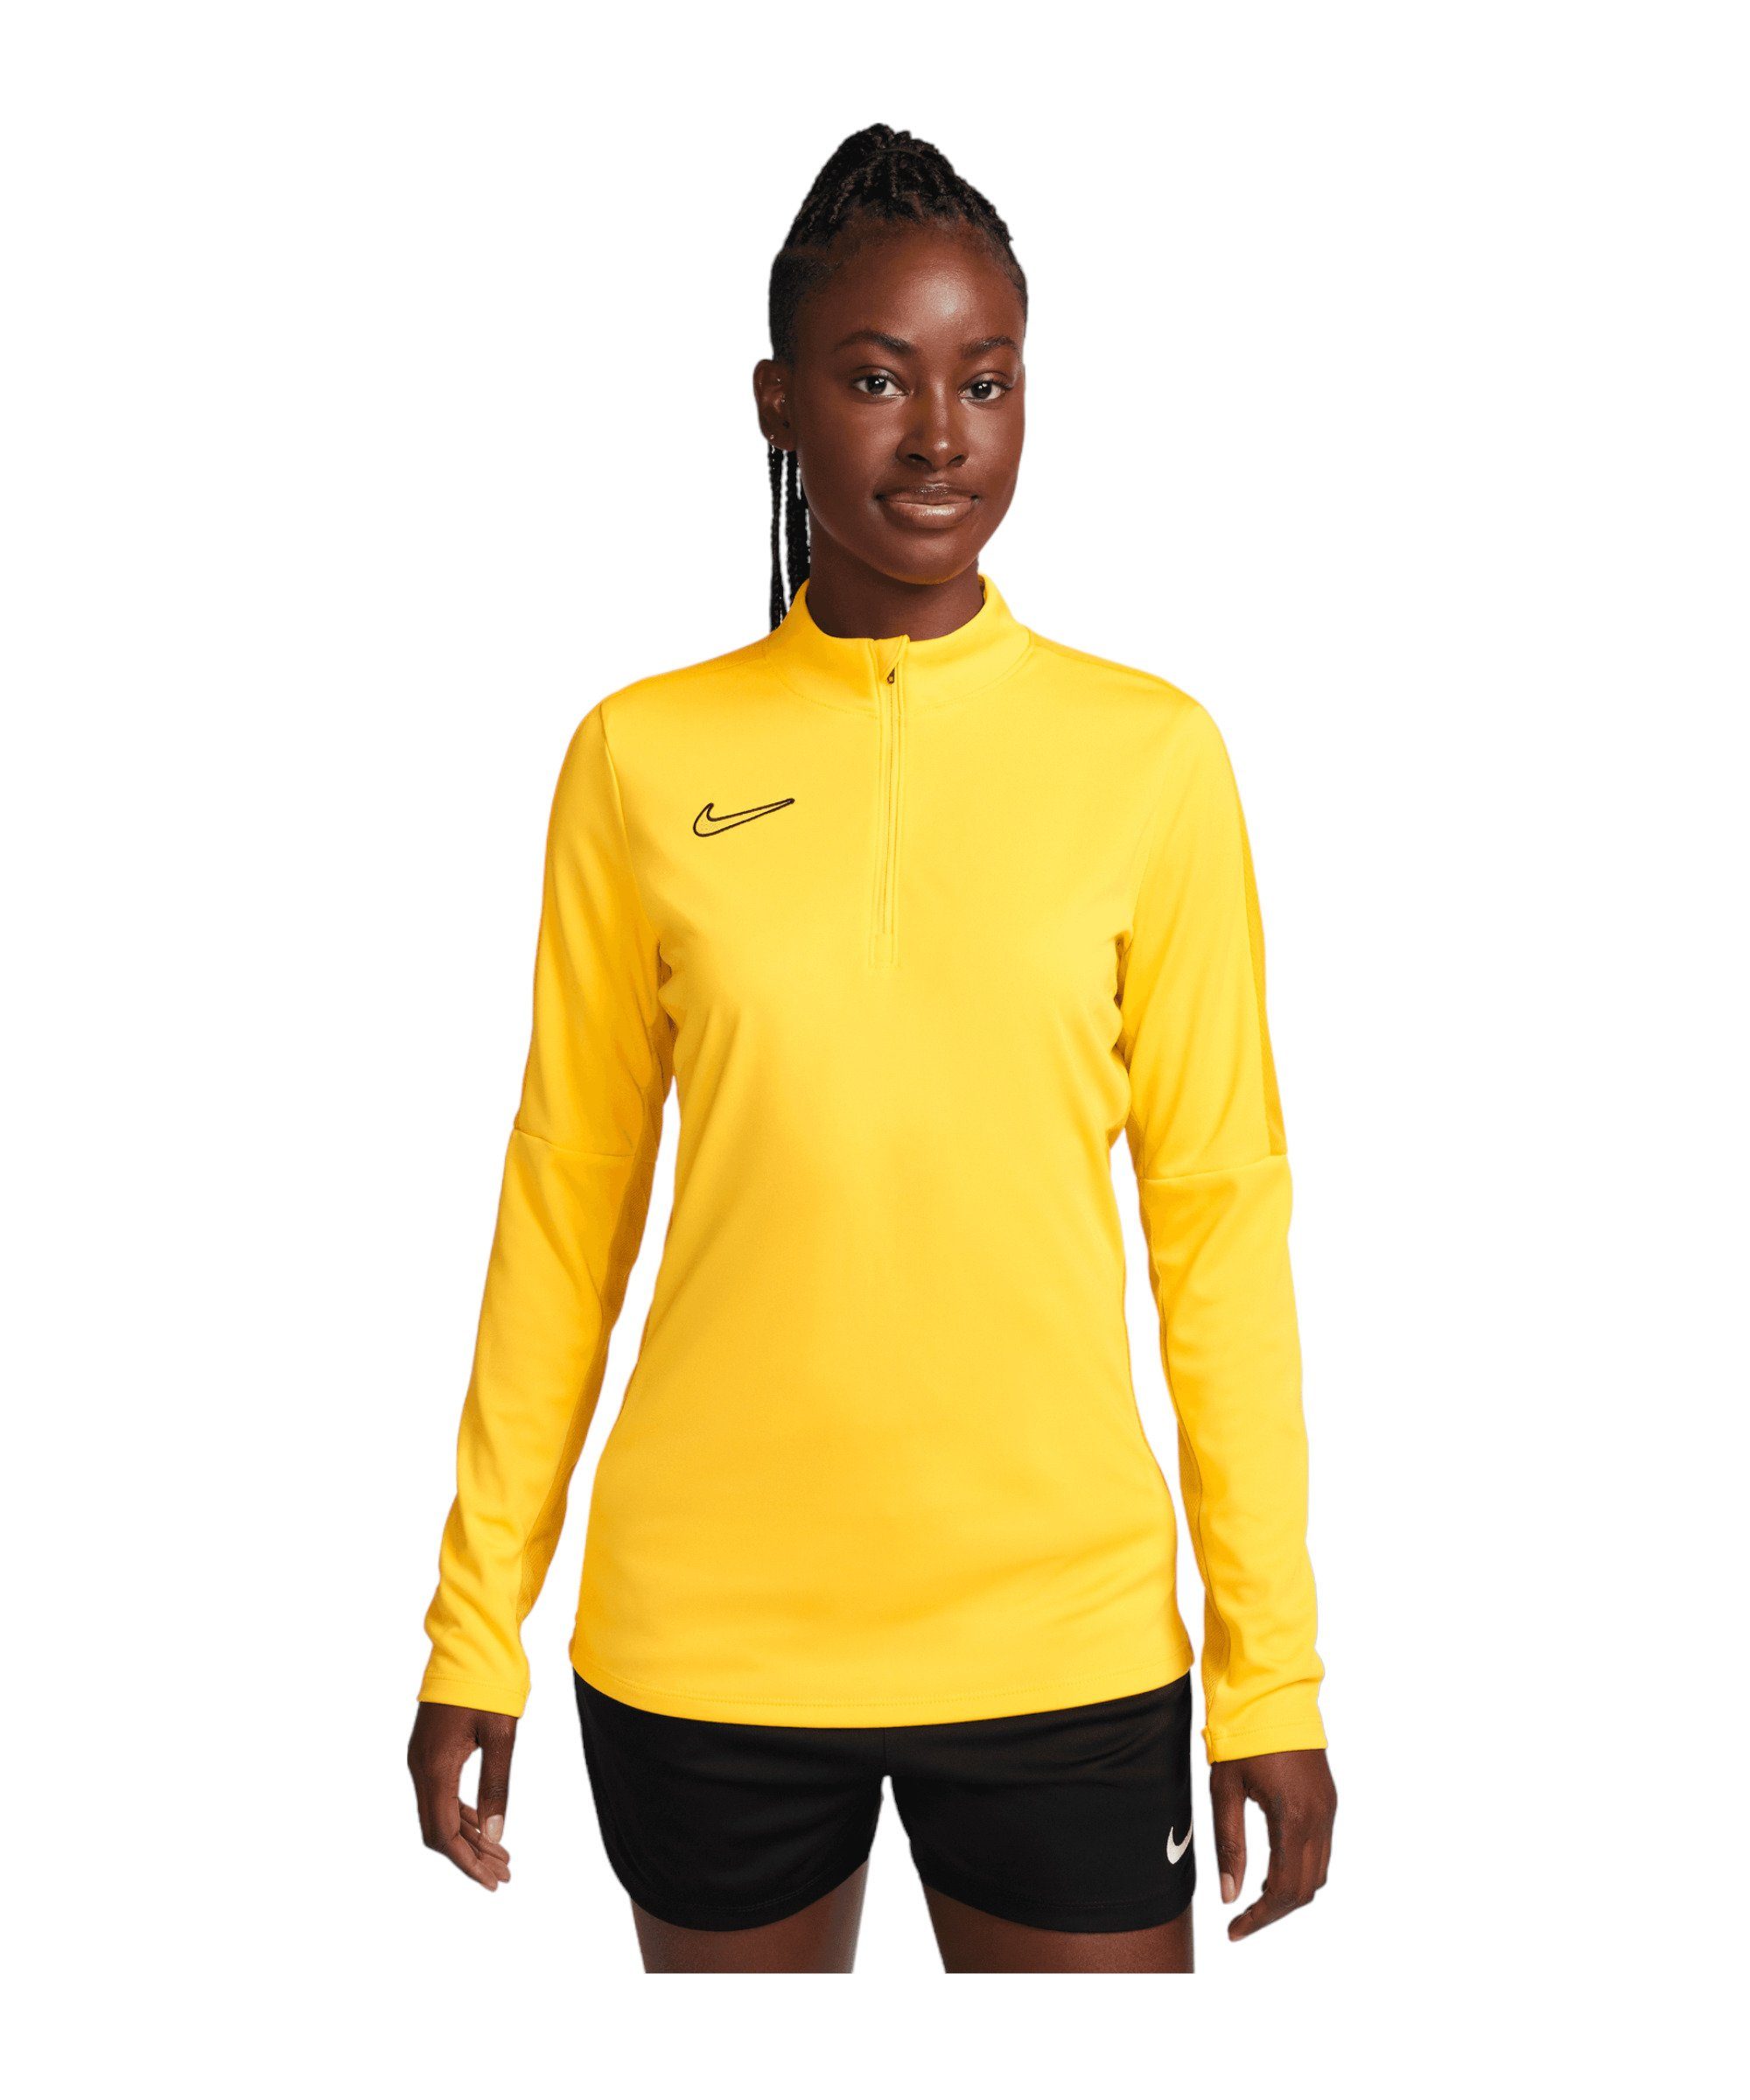 Academy Damen Sweater Top gelbgoldschwarz 23 Drill Nike